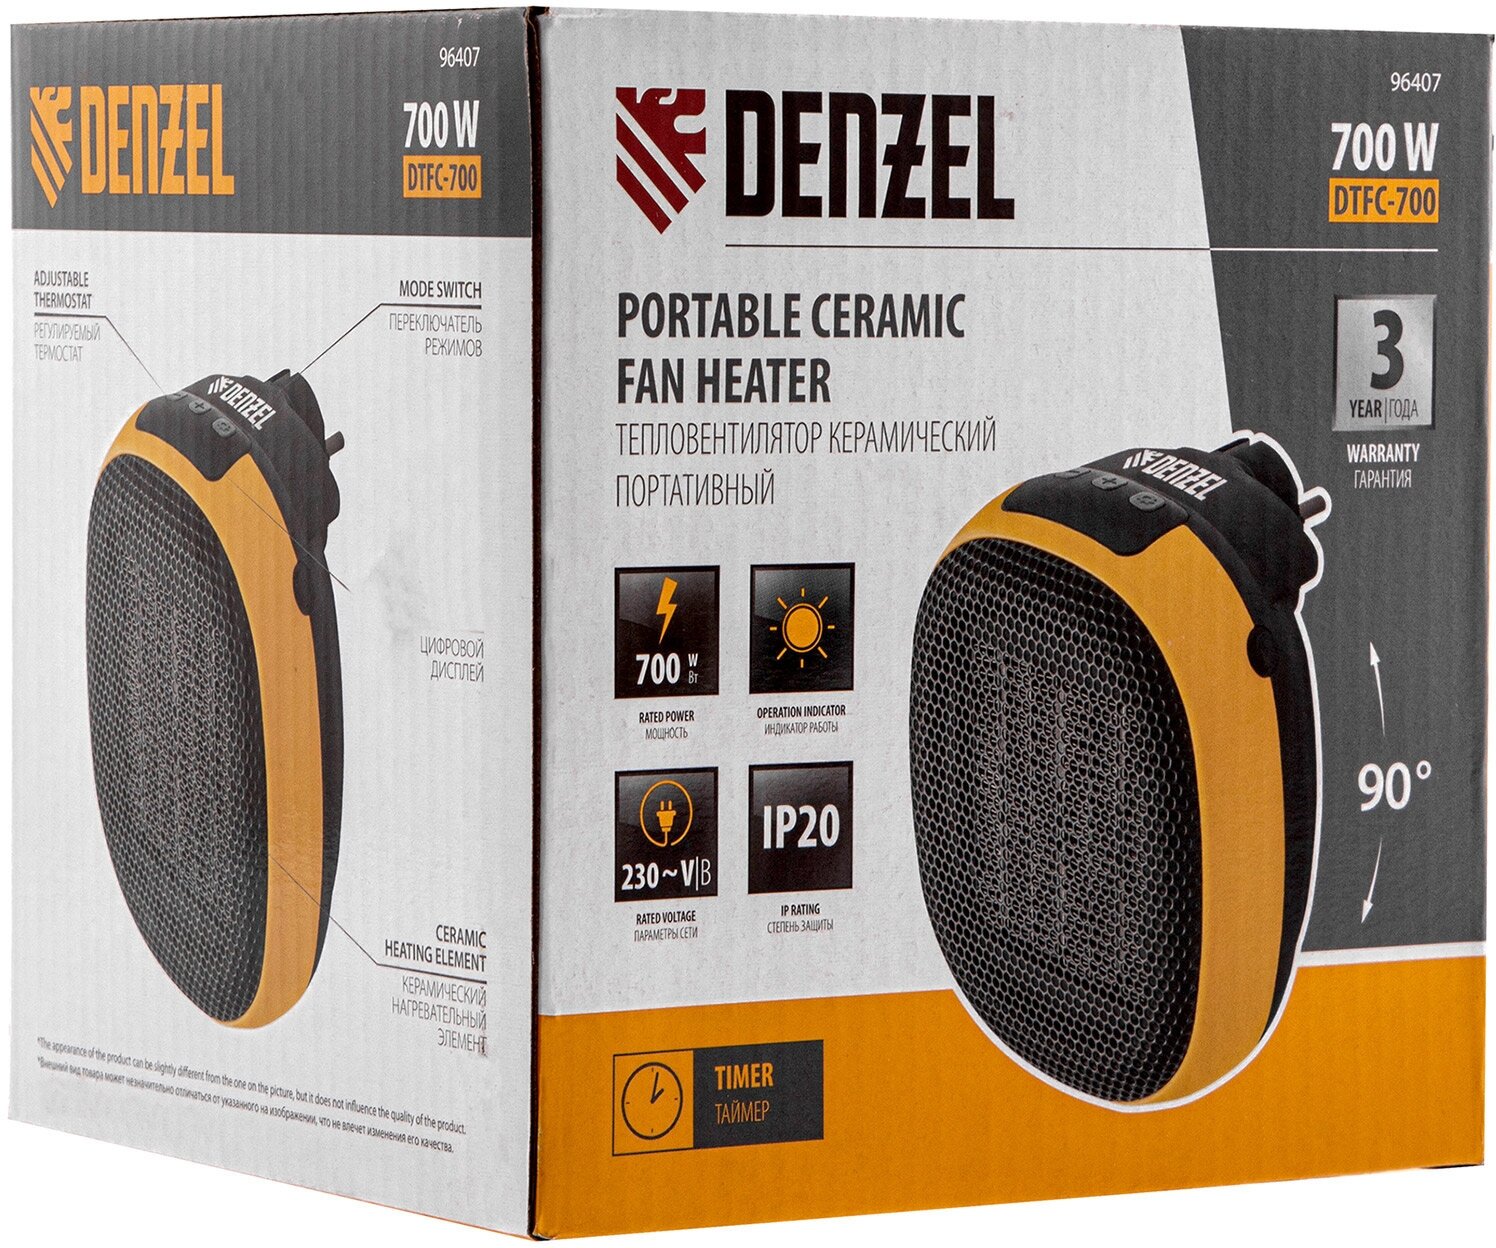 Тепловентилятор портативный керамический Denzel DTFC-700 3 реж. вентилятор, нагрев 700 Вт 96407